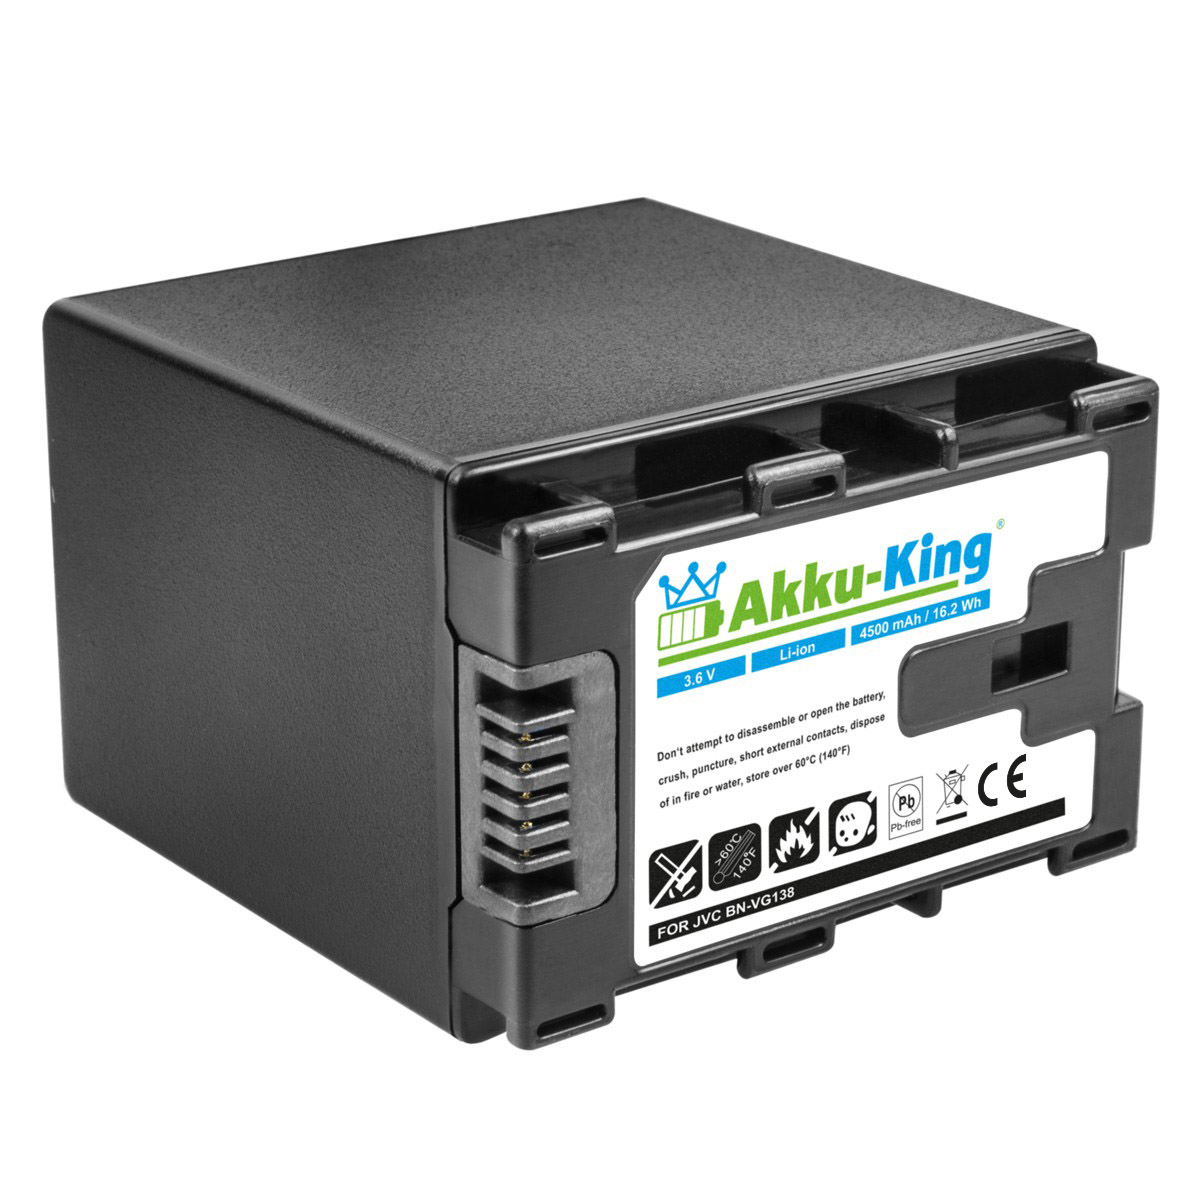 AKKU-KING Akku kompatibel mit Volt, JVC 3.6 BN-VG138 Li-Ion 4500mAh Kamera-Akku